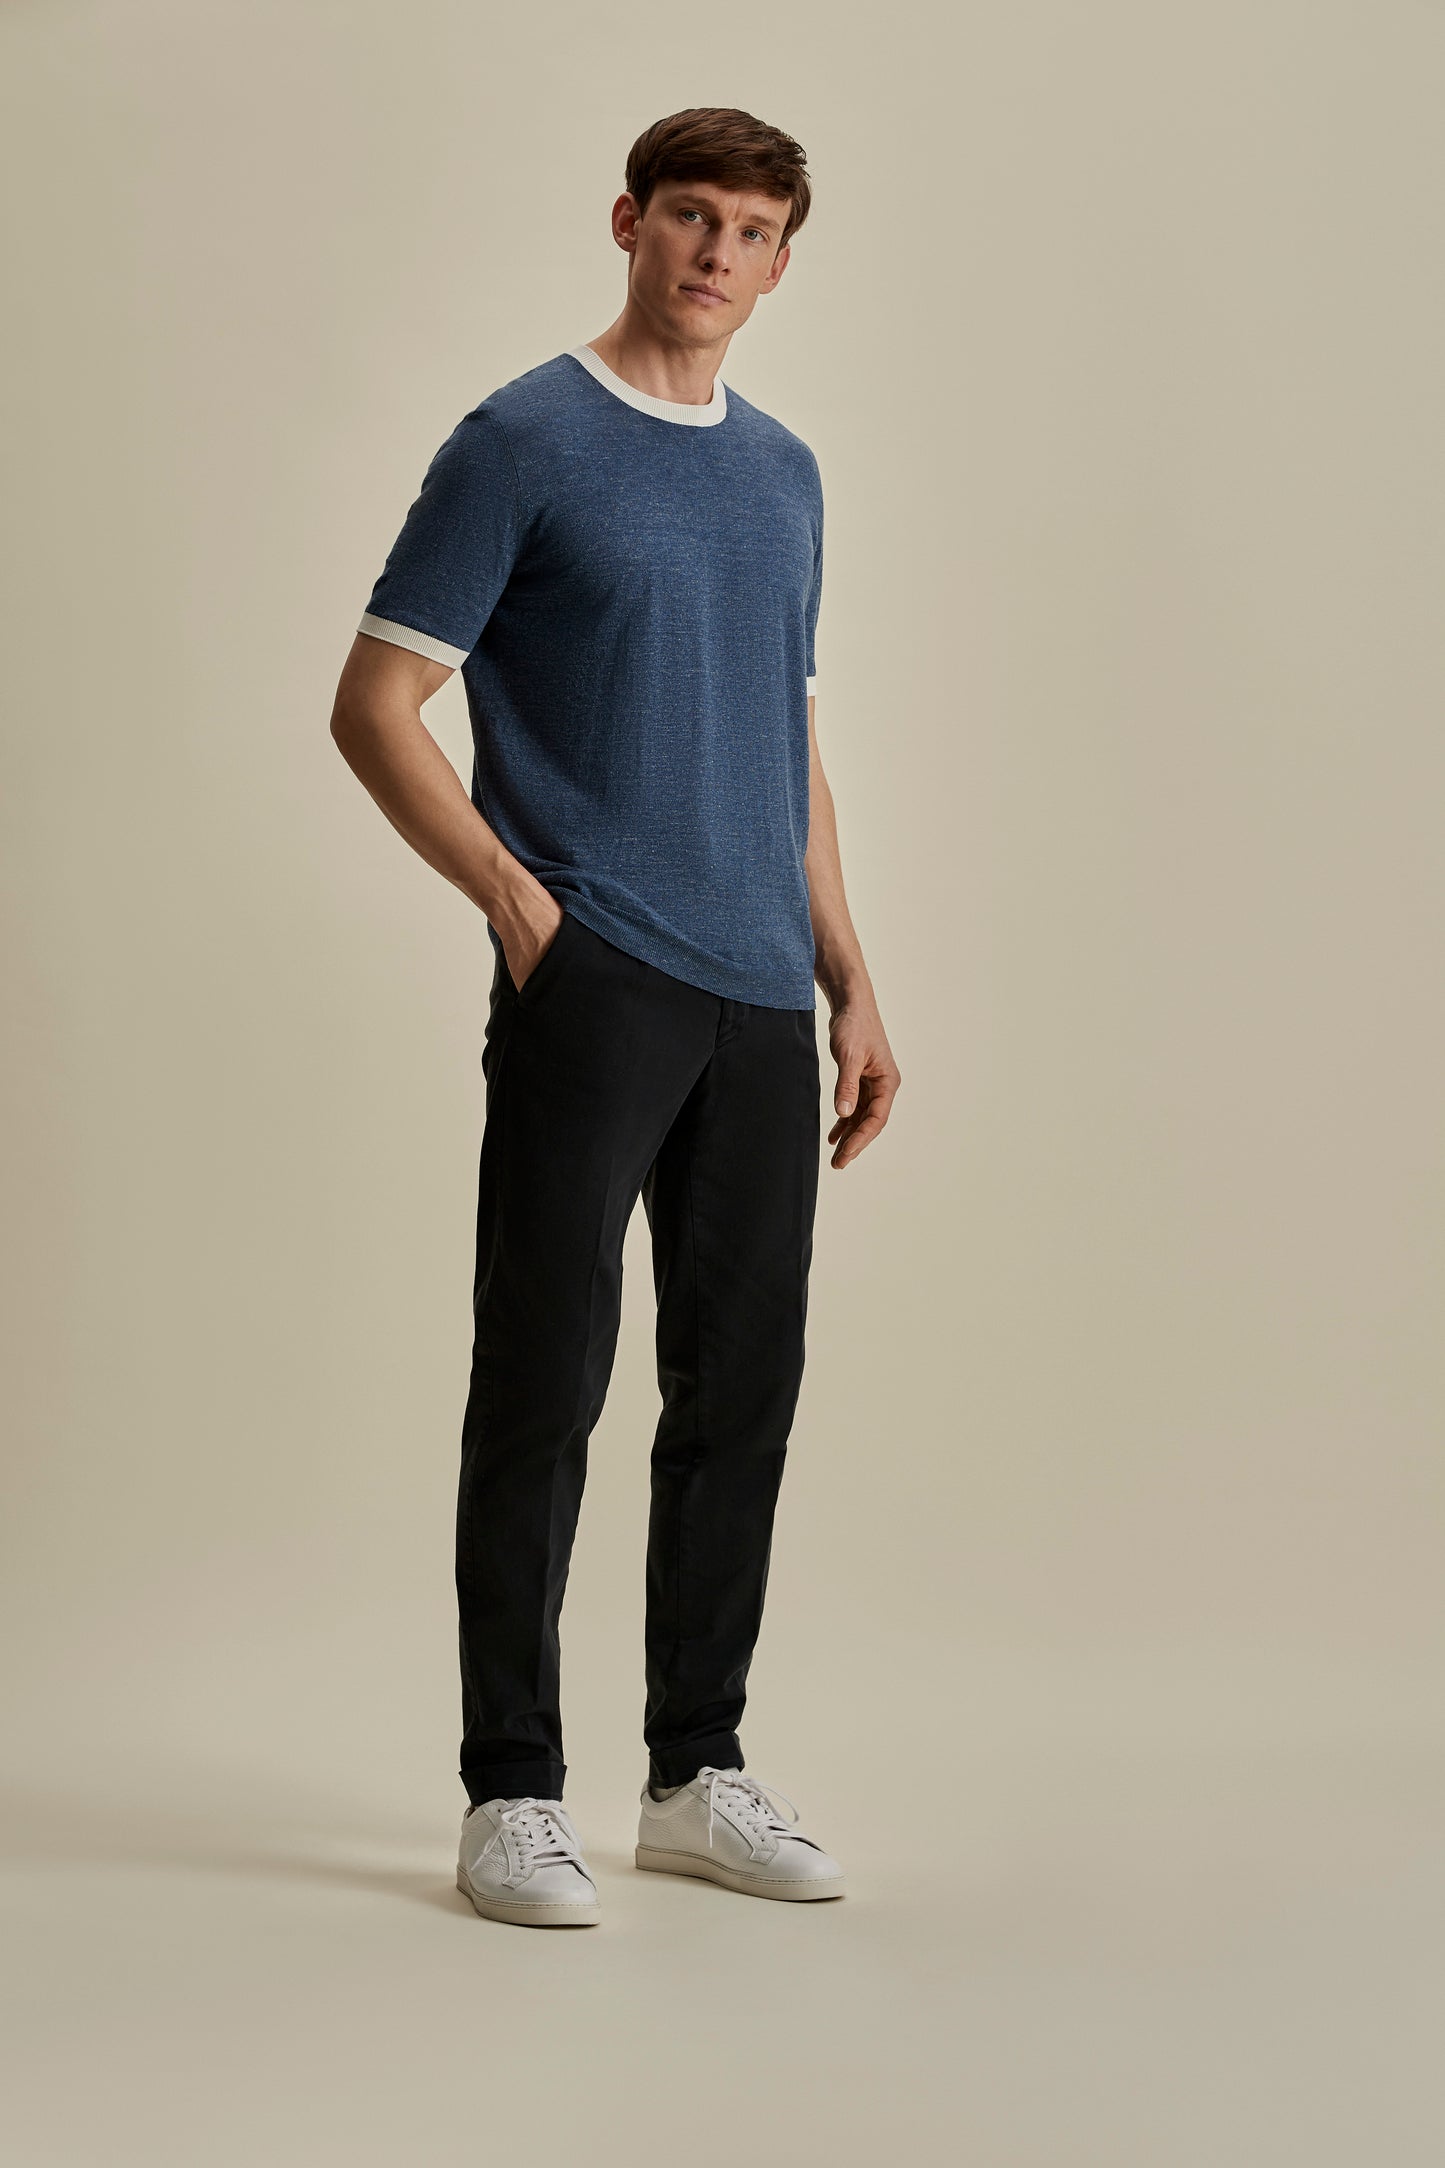 Linen Cotton Contrast Rib T-Shirt Denim White Full Length Model Image